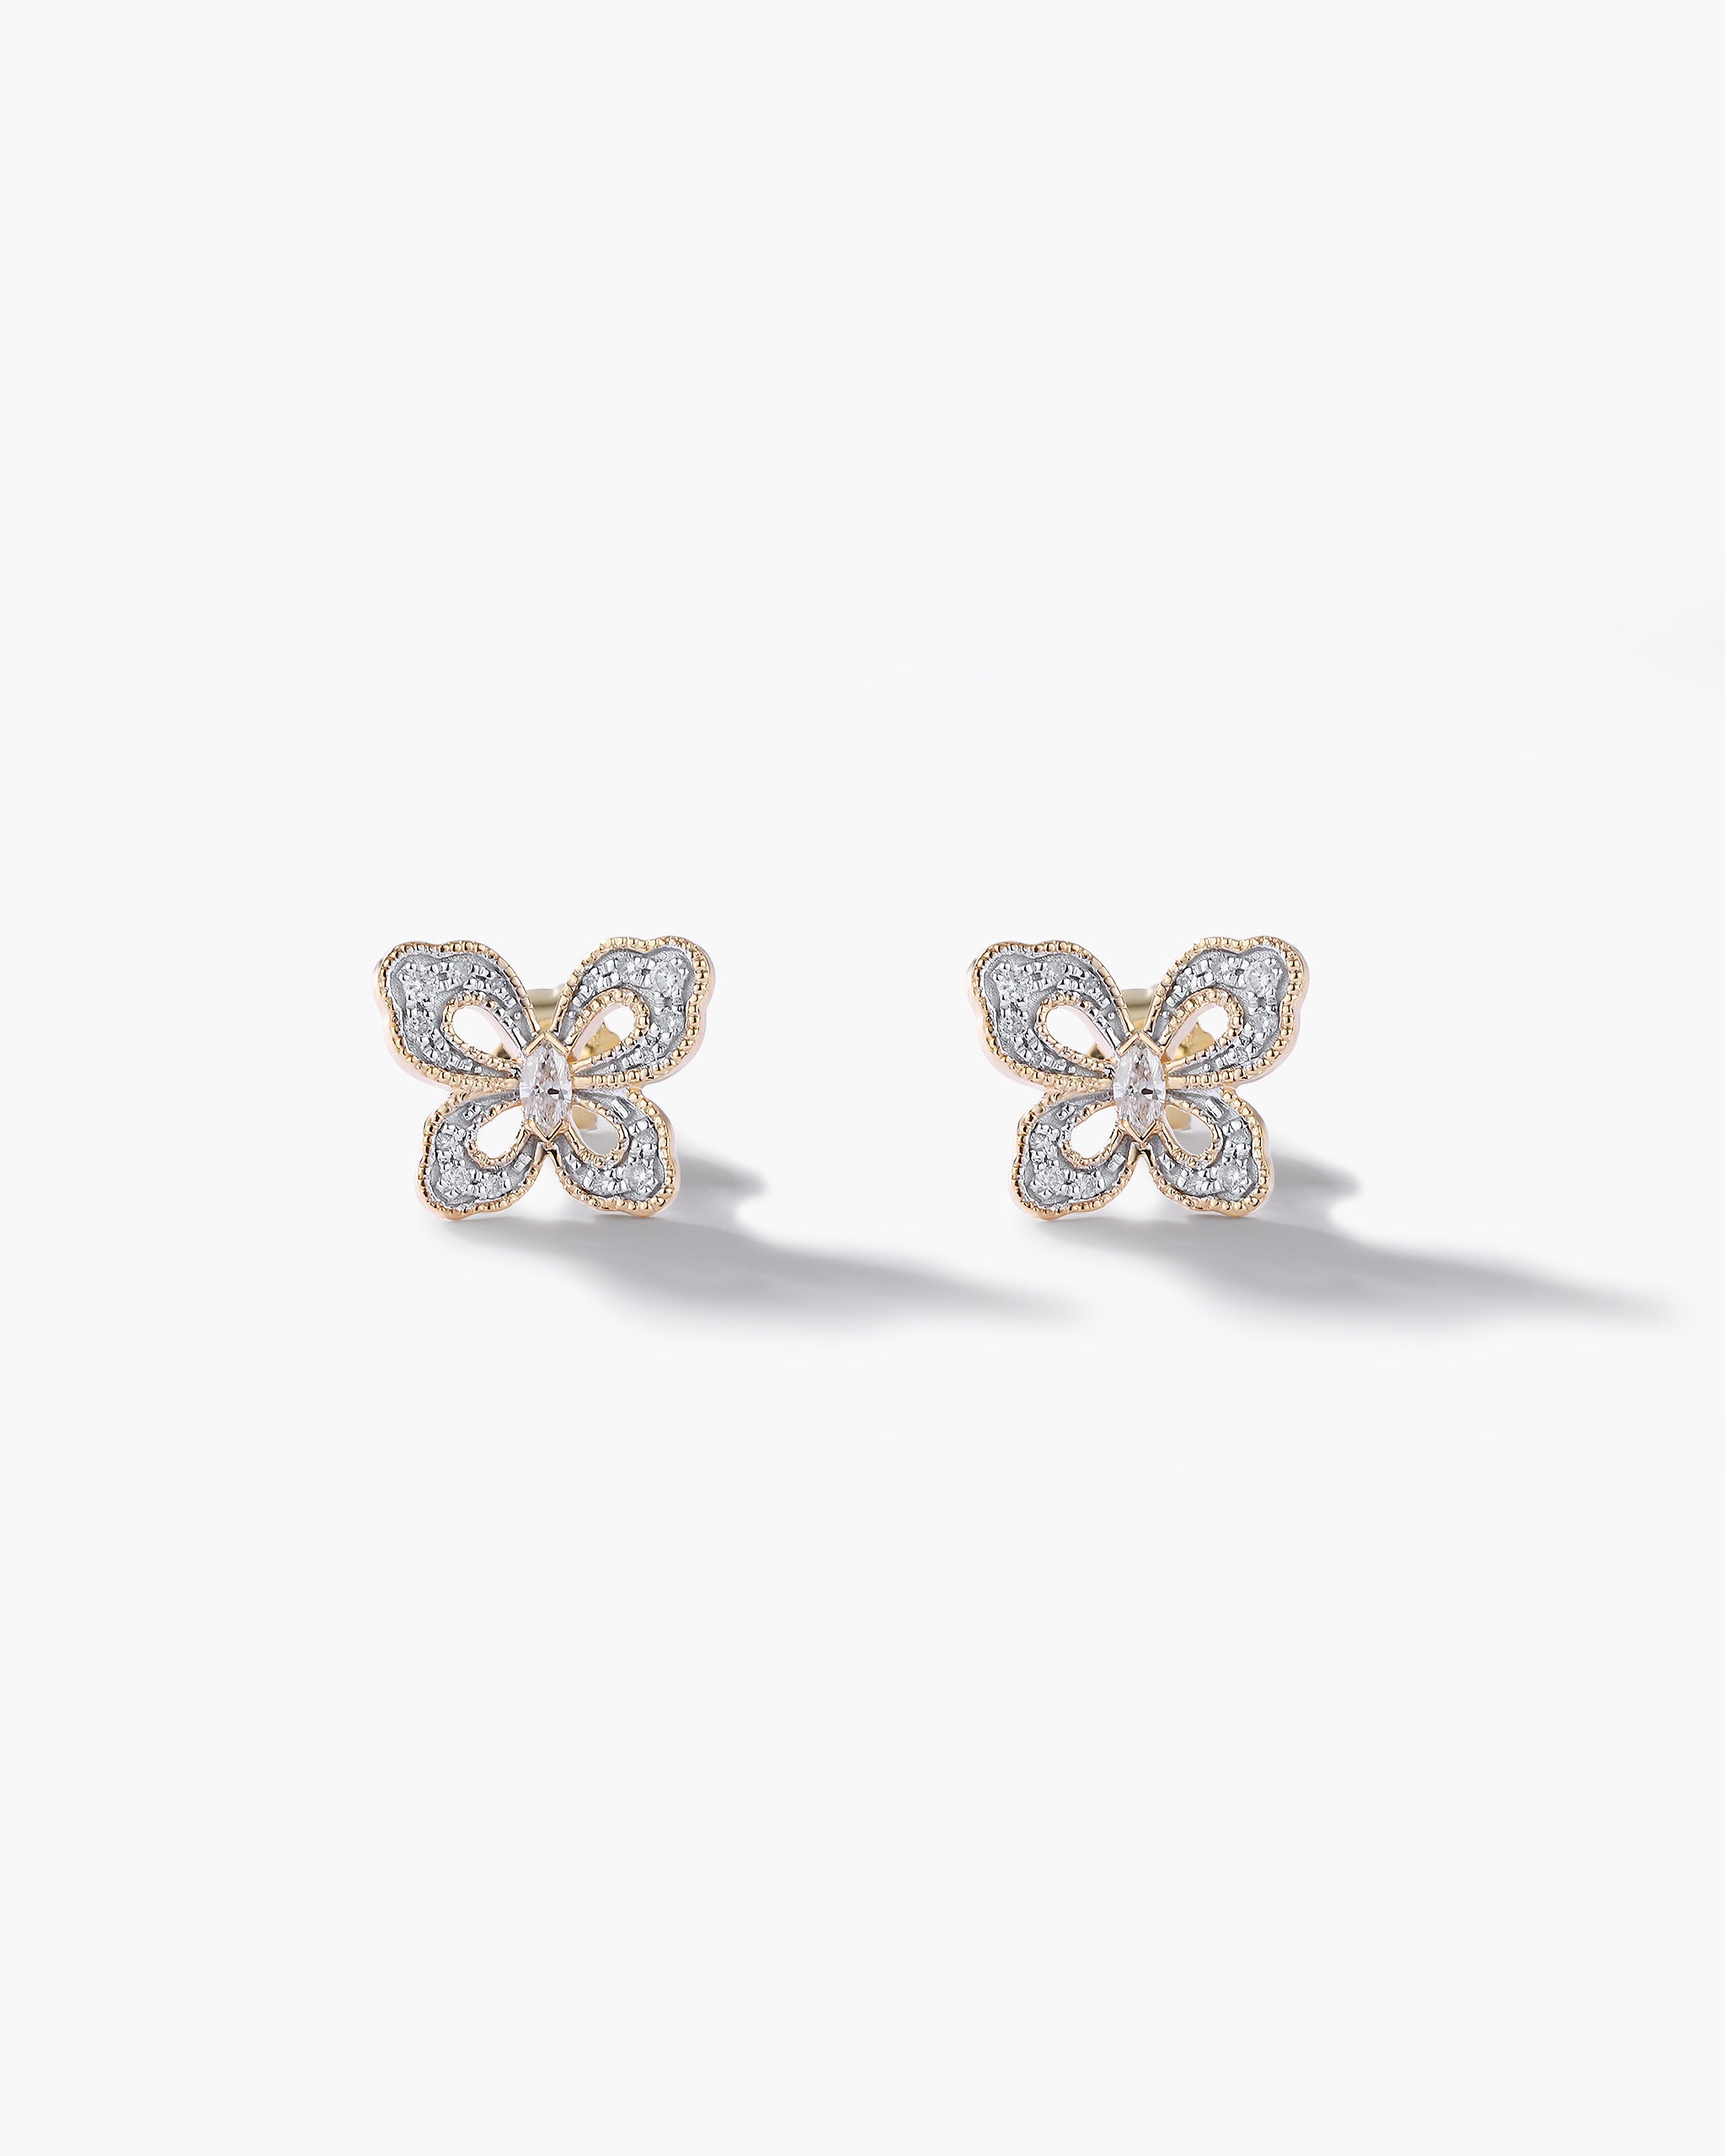 Butterfly Earrings - Eileen | Abbott Atelier | Artisan Jewelry